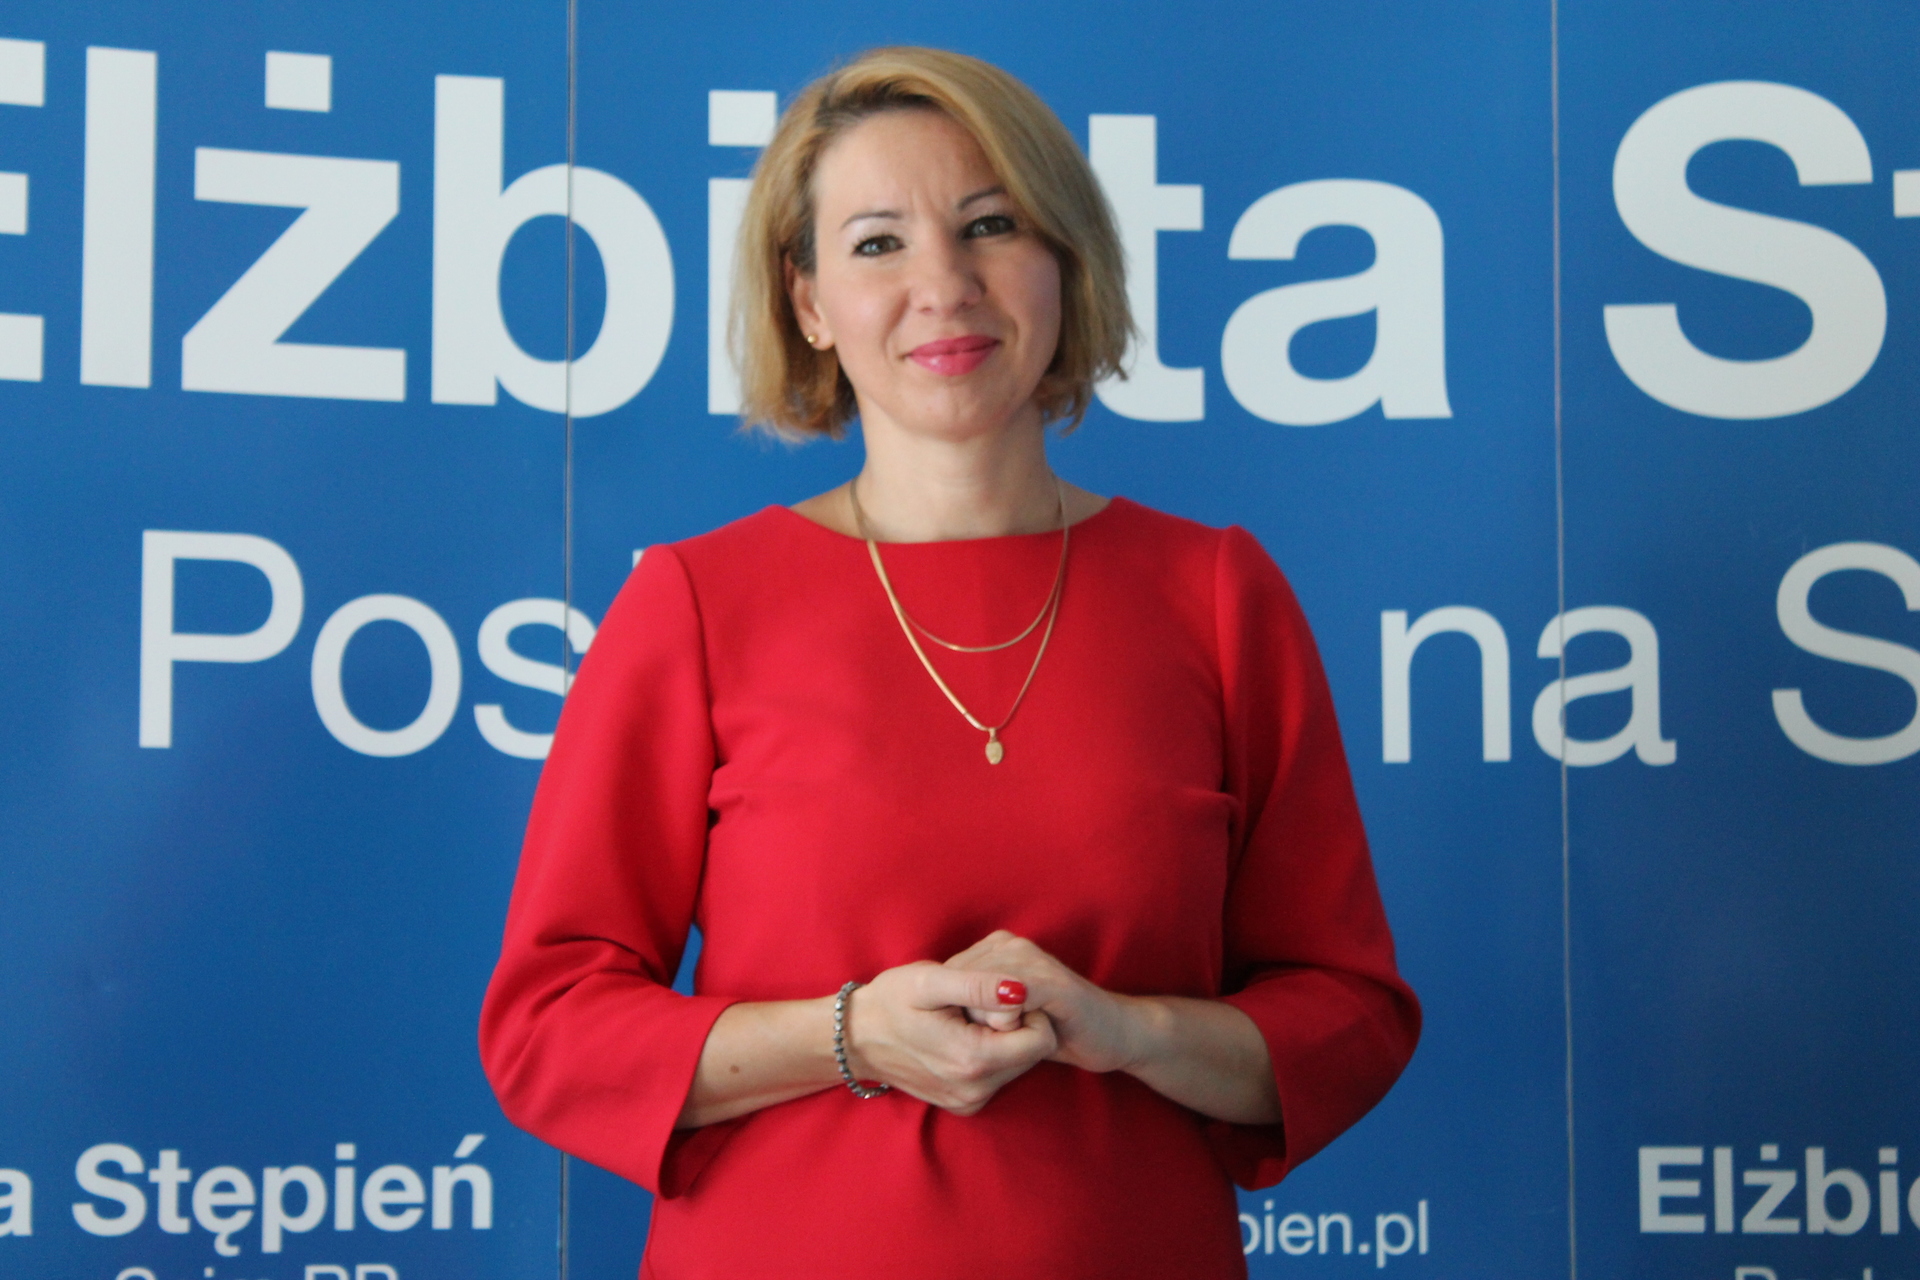 Posłanka Stępień na liście kandydatów do europarlamentu